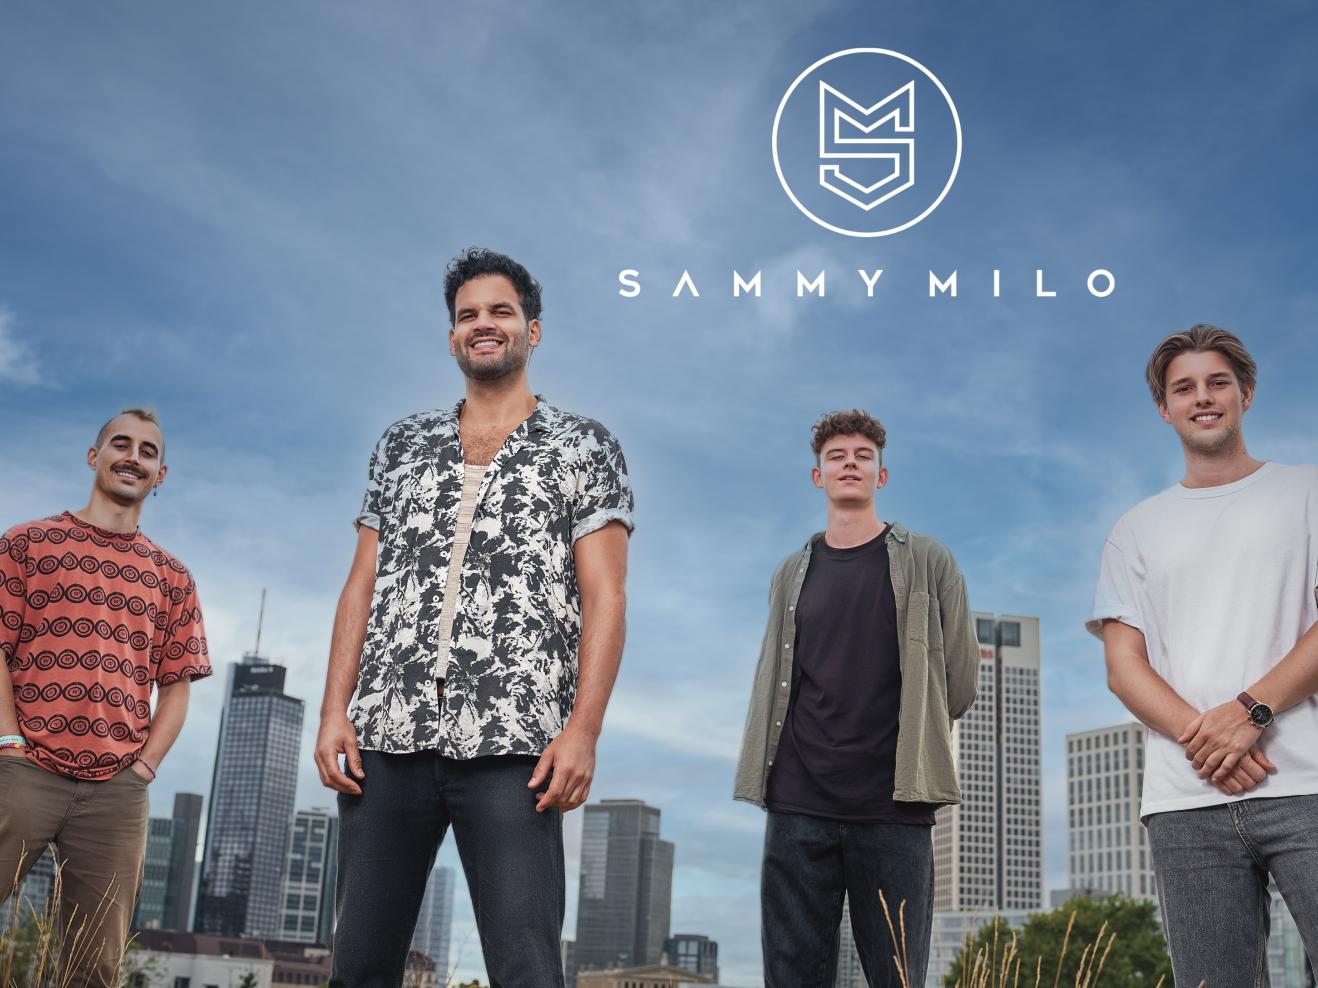 Gruppenfoto der Band Sammy Milo vor der Frankfurter Skyline